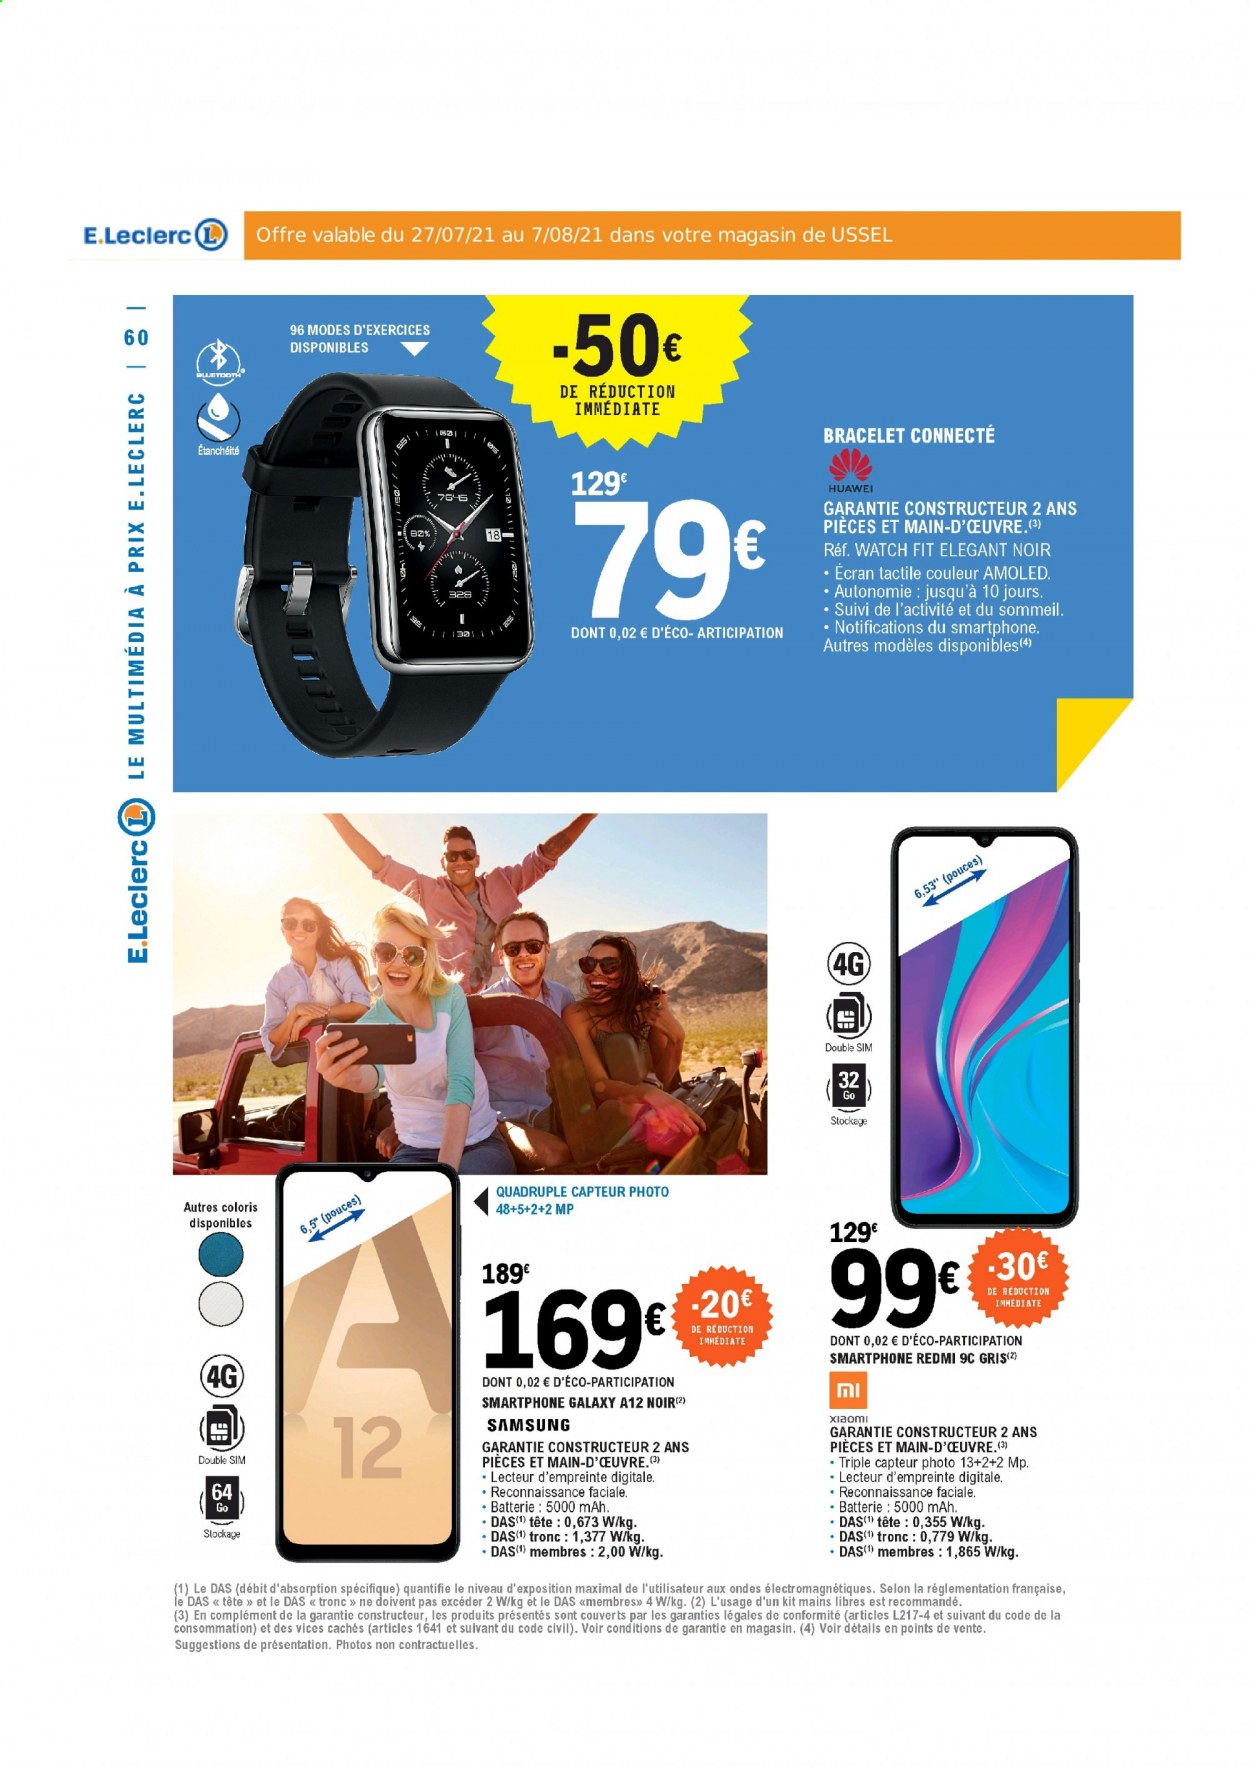 thumbnail - Catalogue E.Leclerc - 27/07/2021 - 07/08/2021 - Produits soldés - Samsung, Xiaomi, Huawei, smartphone, bracelet. Page 60.